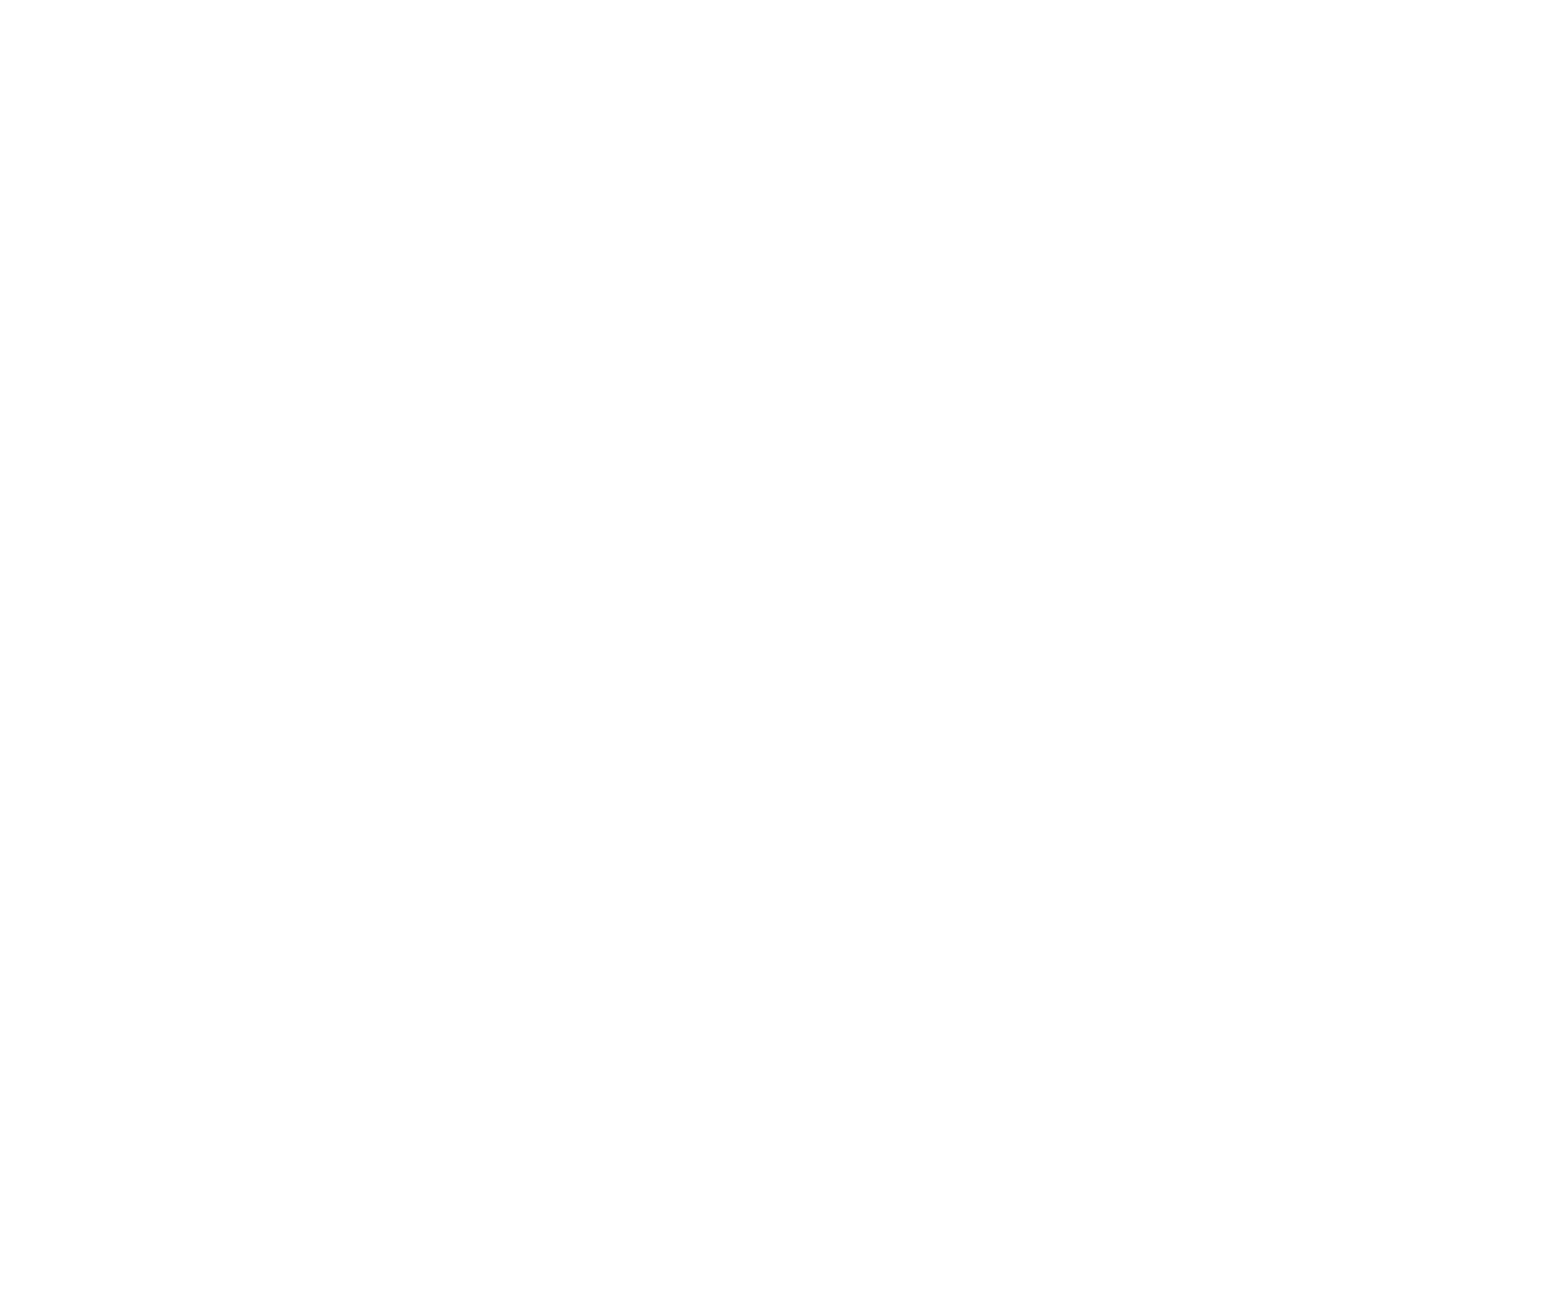 ElringKlinger logo pour fonds sombres (PNG transparent)